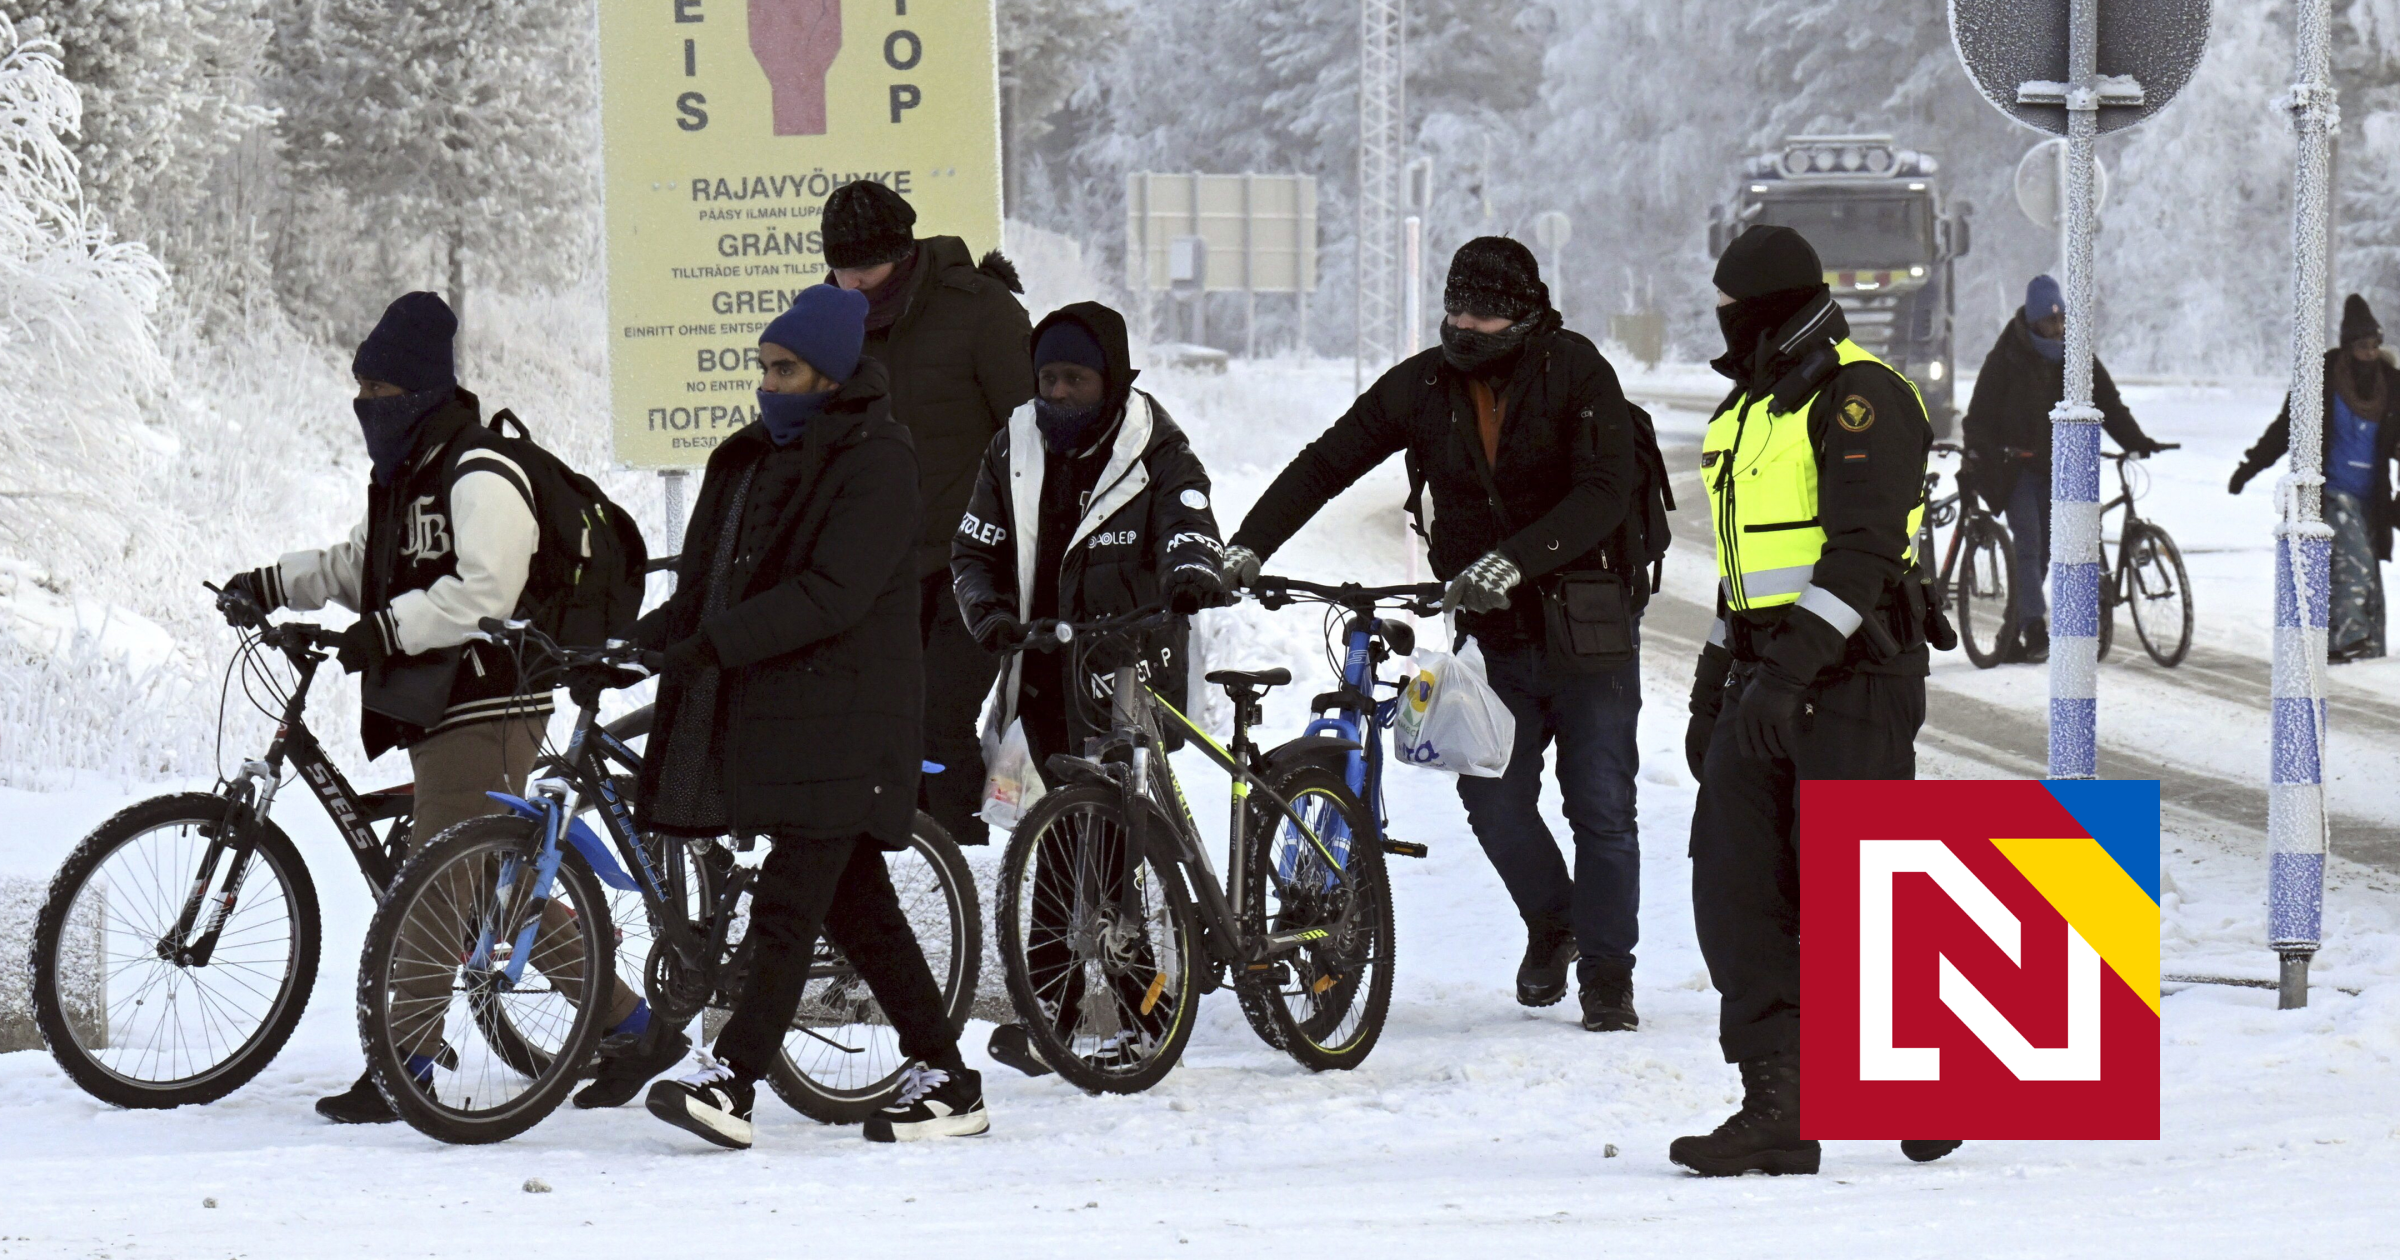 Rusi sa Fínom mstia za vstup do NATO. Posielajú im na bicykloch migrantov z Blízkeho východu